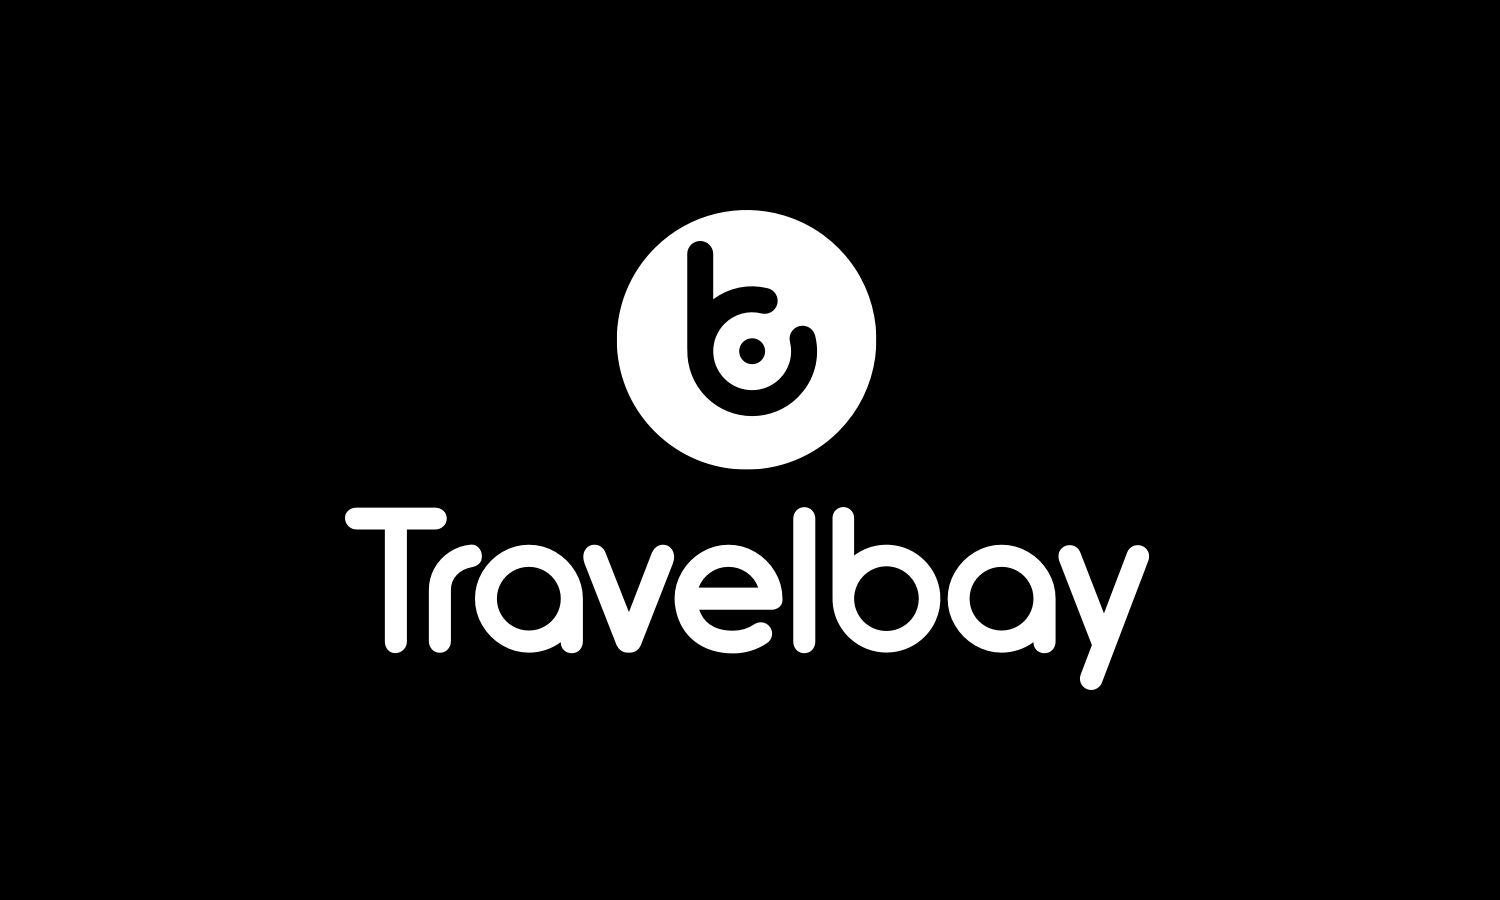 travelbay logo white vertical